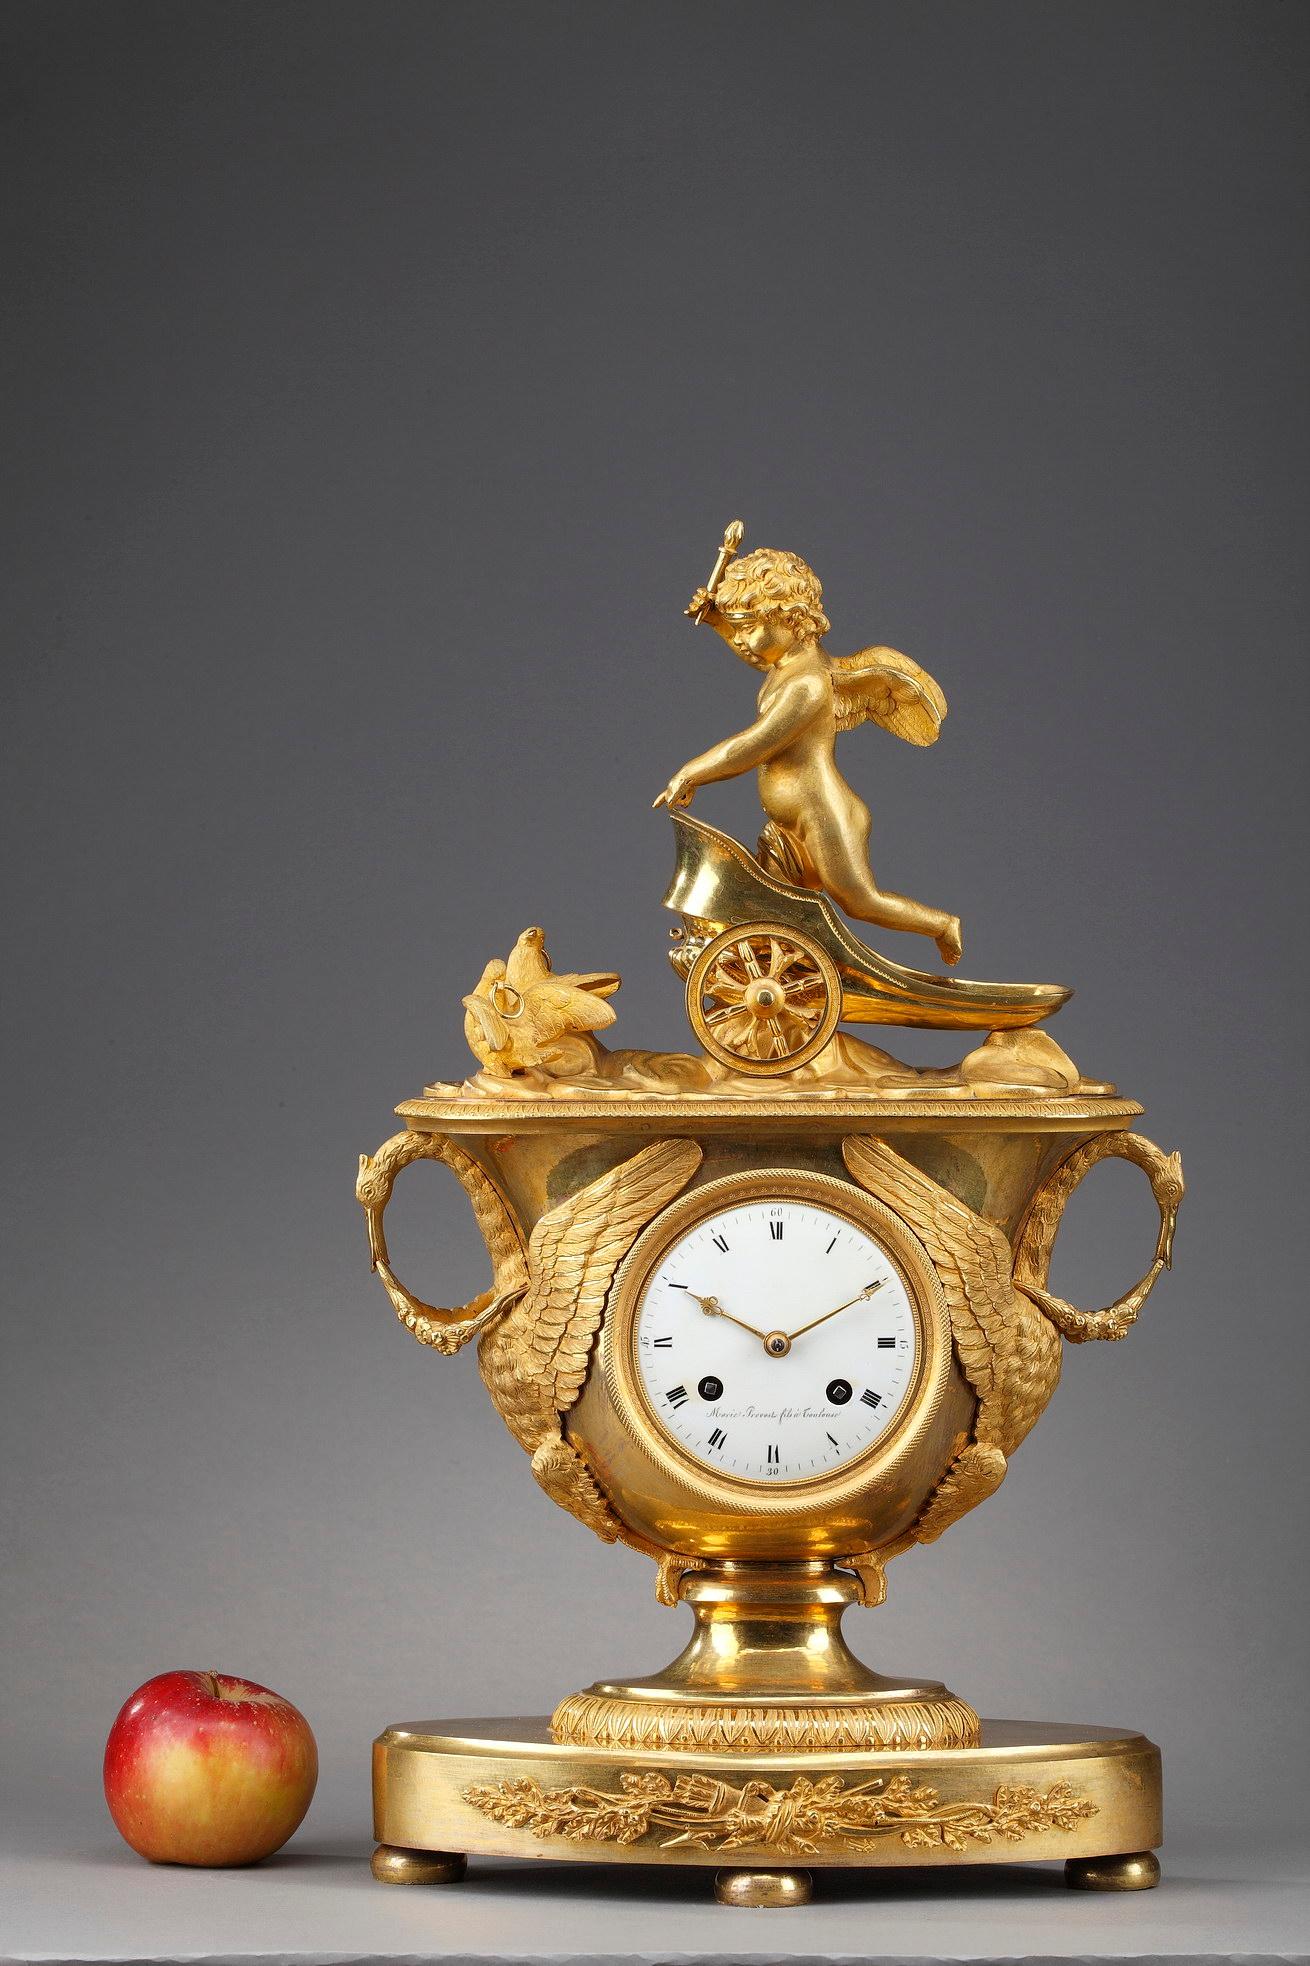 Exceptionnelle pendule de cheminée en bronze doré dont la clé représente un Cupidon ailé dans un char. Le char est tiré par deux colombes qui se reposent sur une plate-forme ornée de feuilles d'eau. Le corps de l'horloge a la forme d'un vase, qui